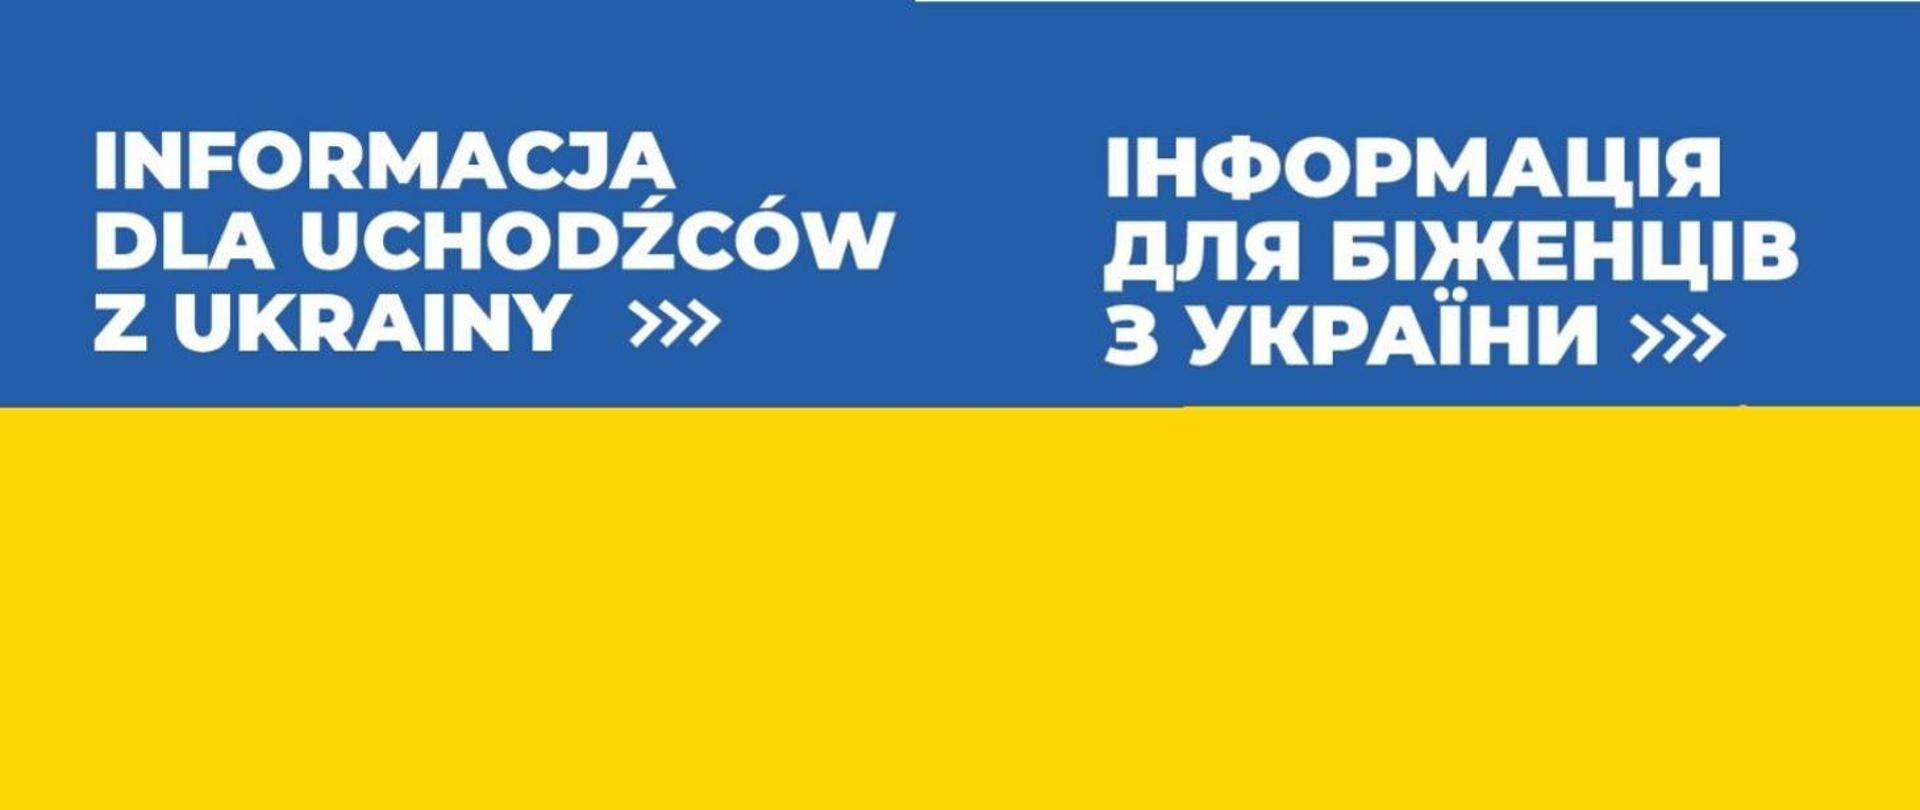 Na tle niebiesko-żółtej flagi Ukrainy napis informacja dla uchodźców z Ukrainy w języku polskim i ukraińskim.